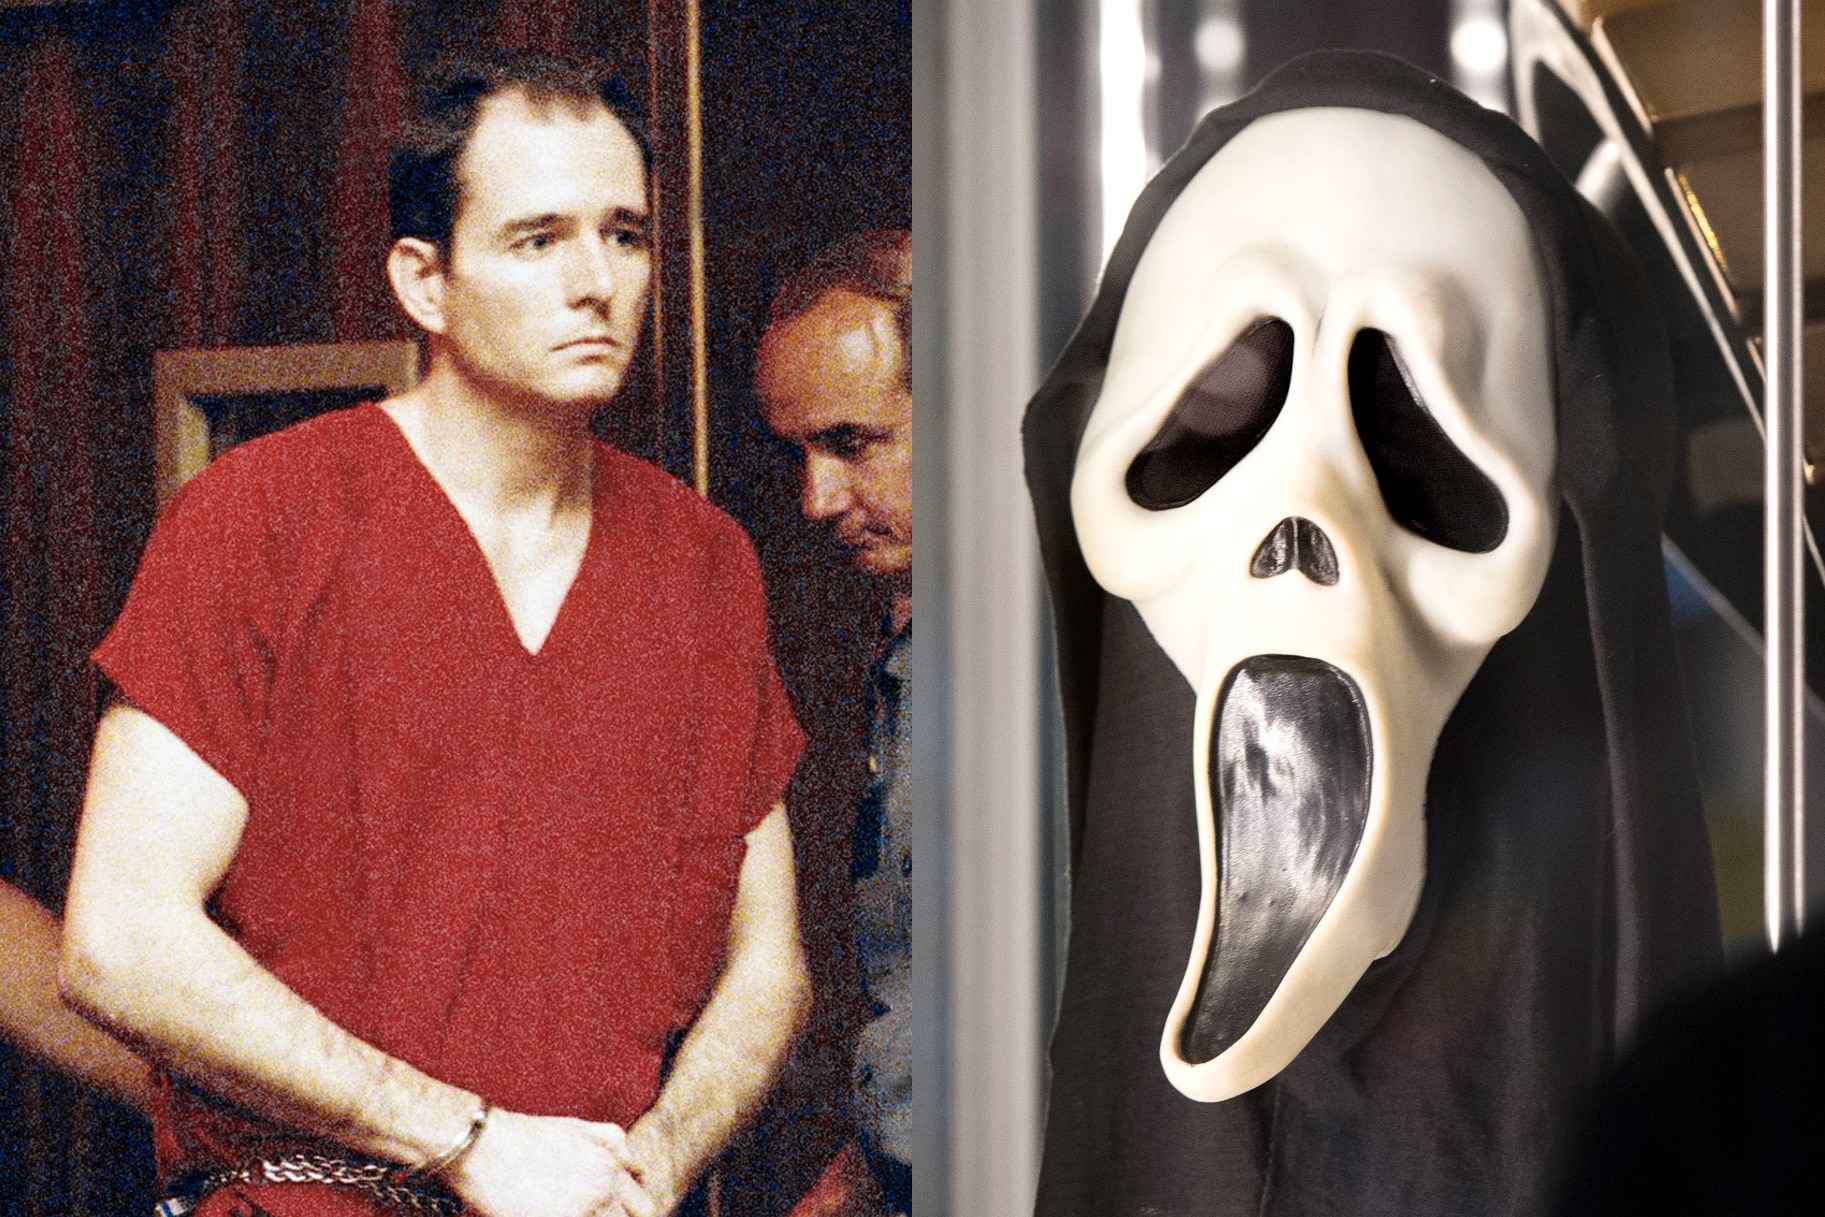 Eenzaamheid Het kantoor betreden How The Danny Rolling Serial Killer Case Inspired 'Scream' | True Crime Buzz